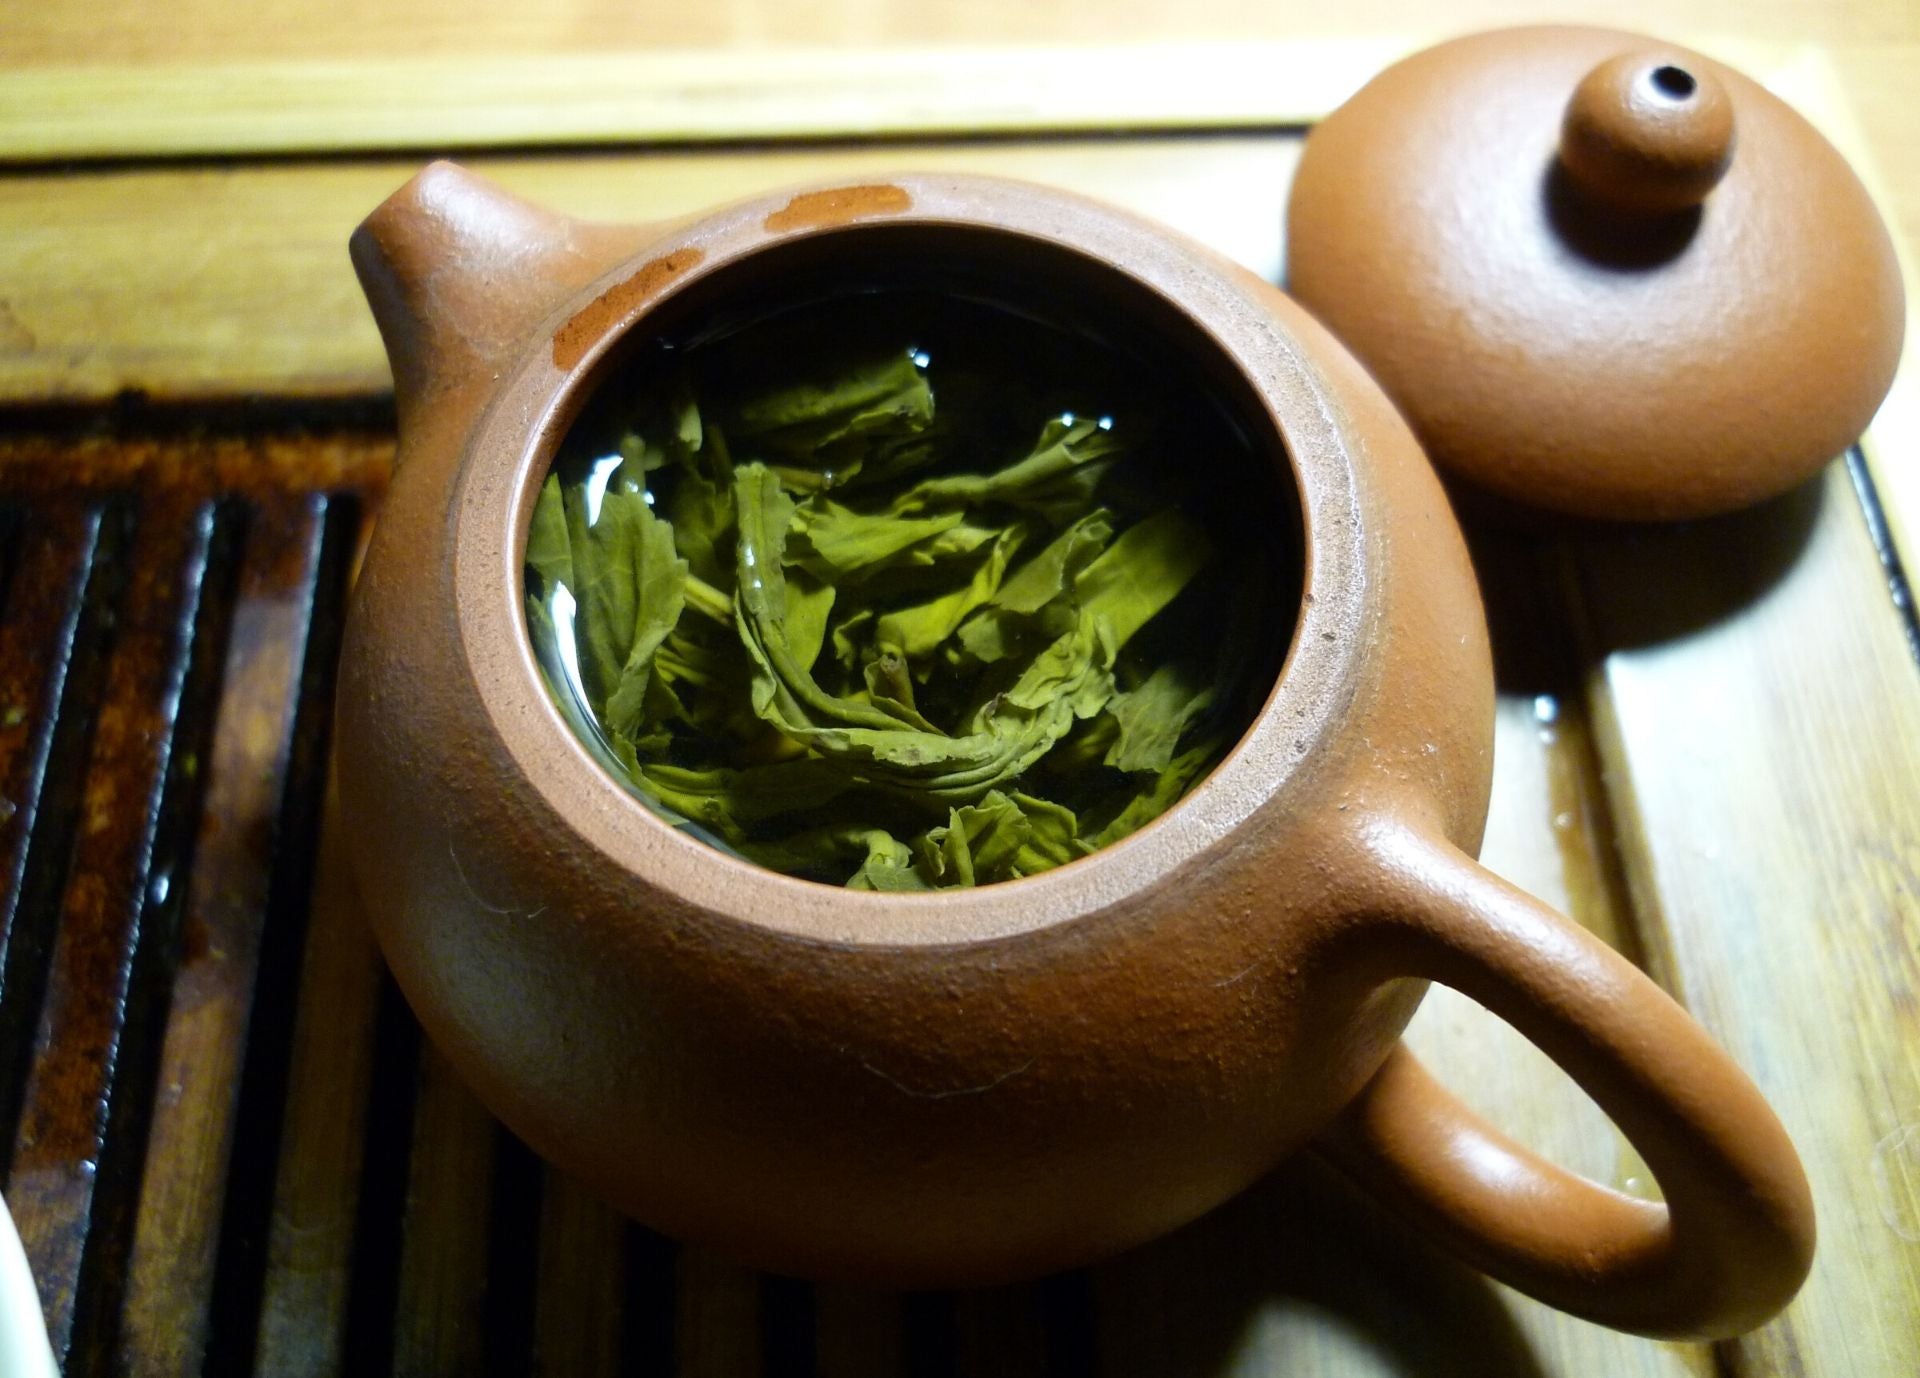 Comment bien infuser du thé en vrac ?